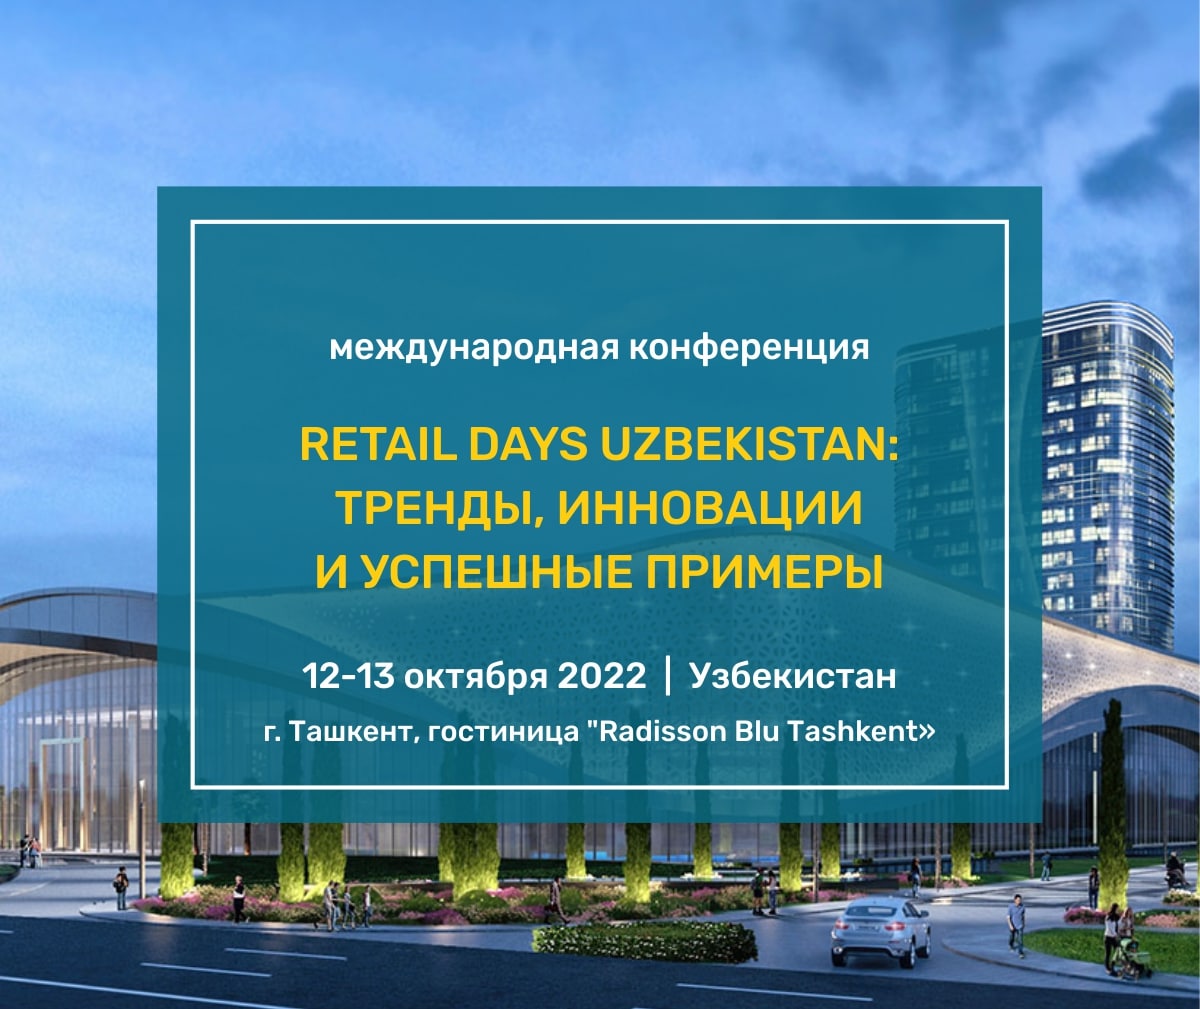 12-13 октября 2022 года в Ташкенте состоится международная конференция для ритейла, поставщиков и производителей FMCG и фарм-отрасли Узбекистана